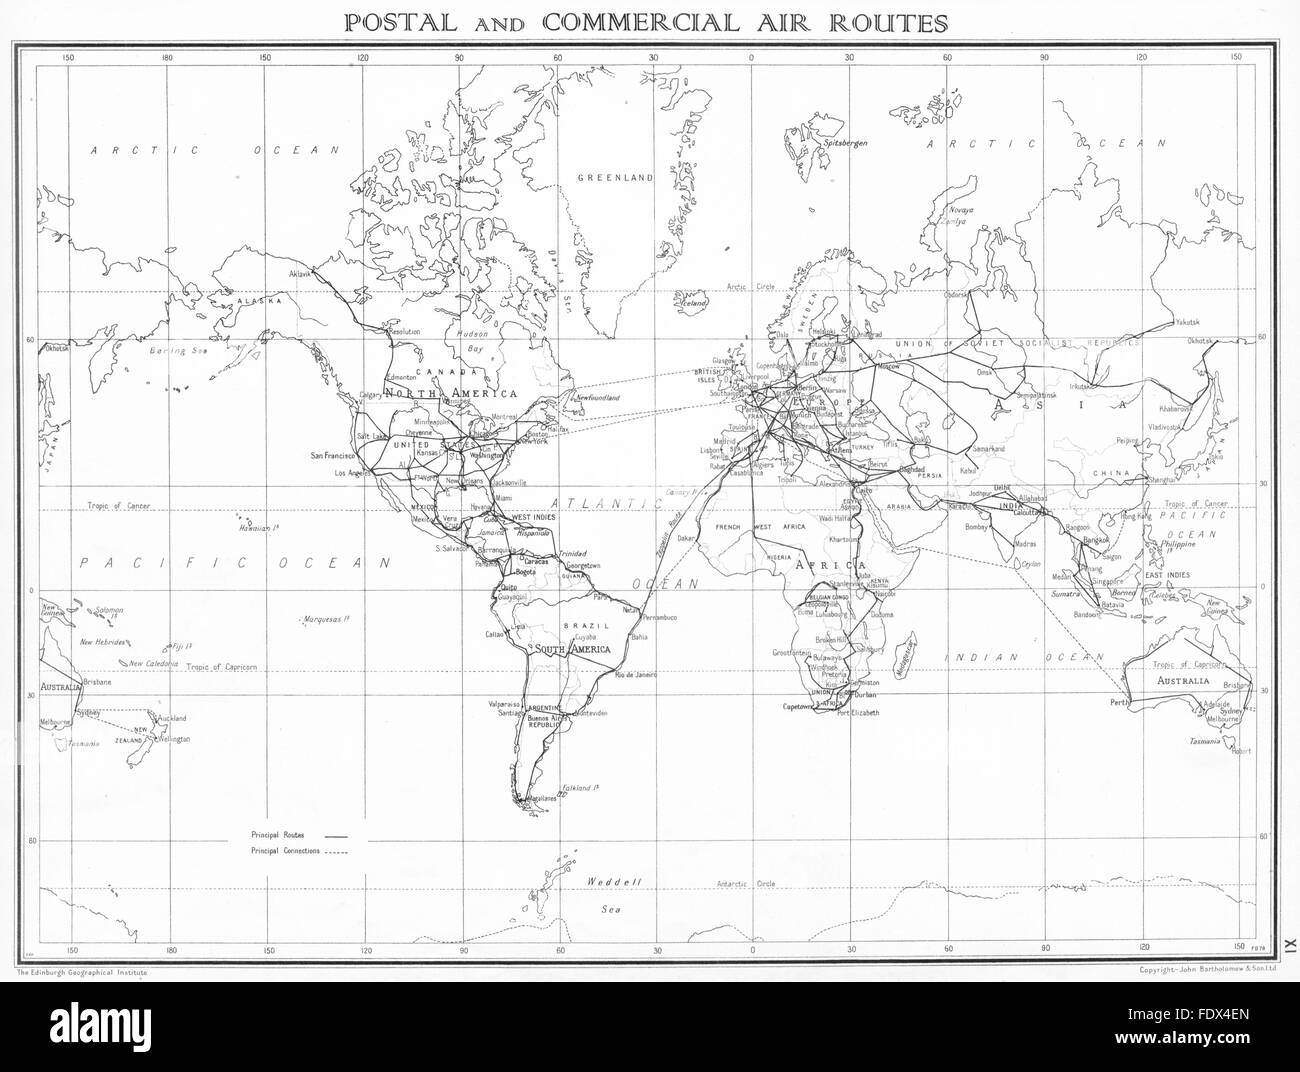 Monde : le service postal et les routes aériennes commerciales, 1938 carte vintage Banque D'Images